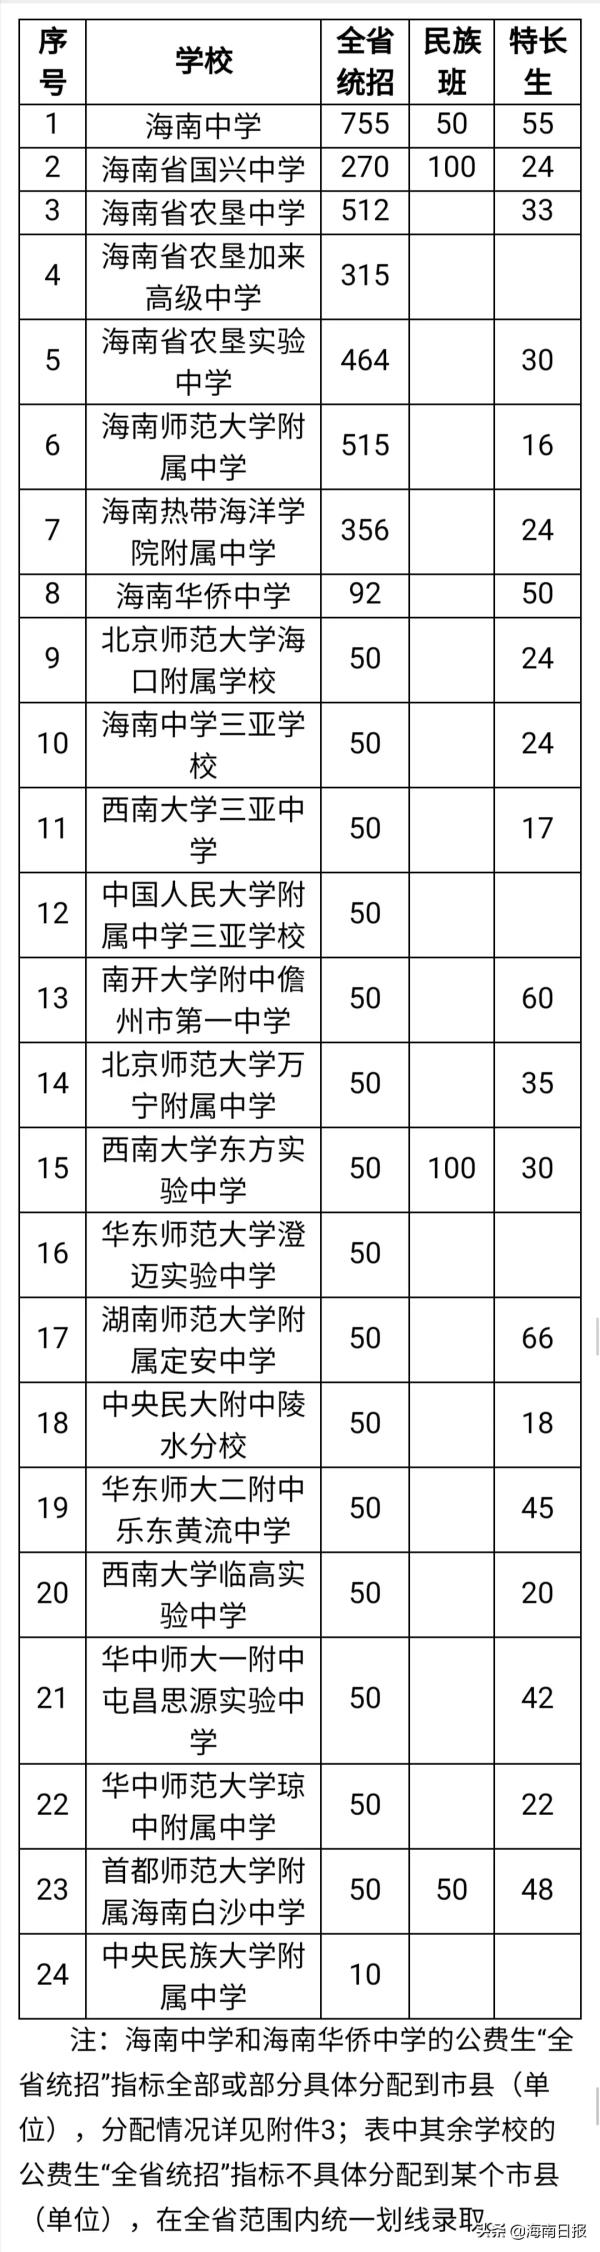 海南省高中课程设置表